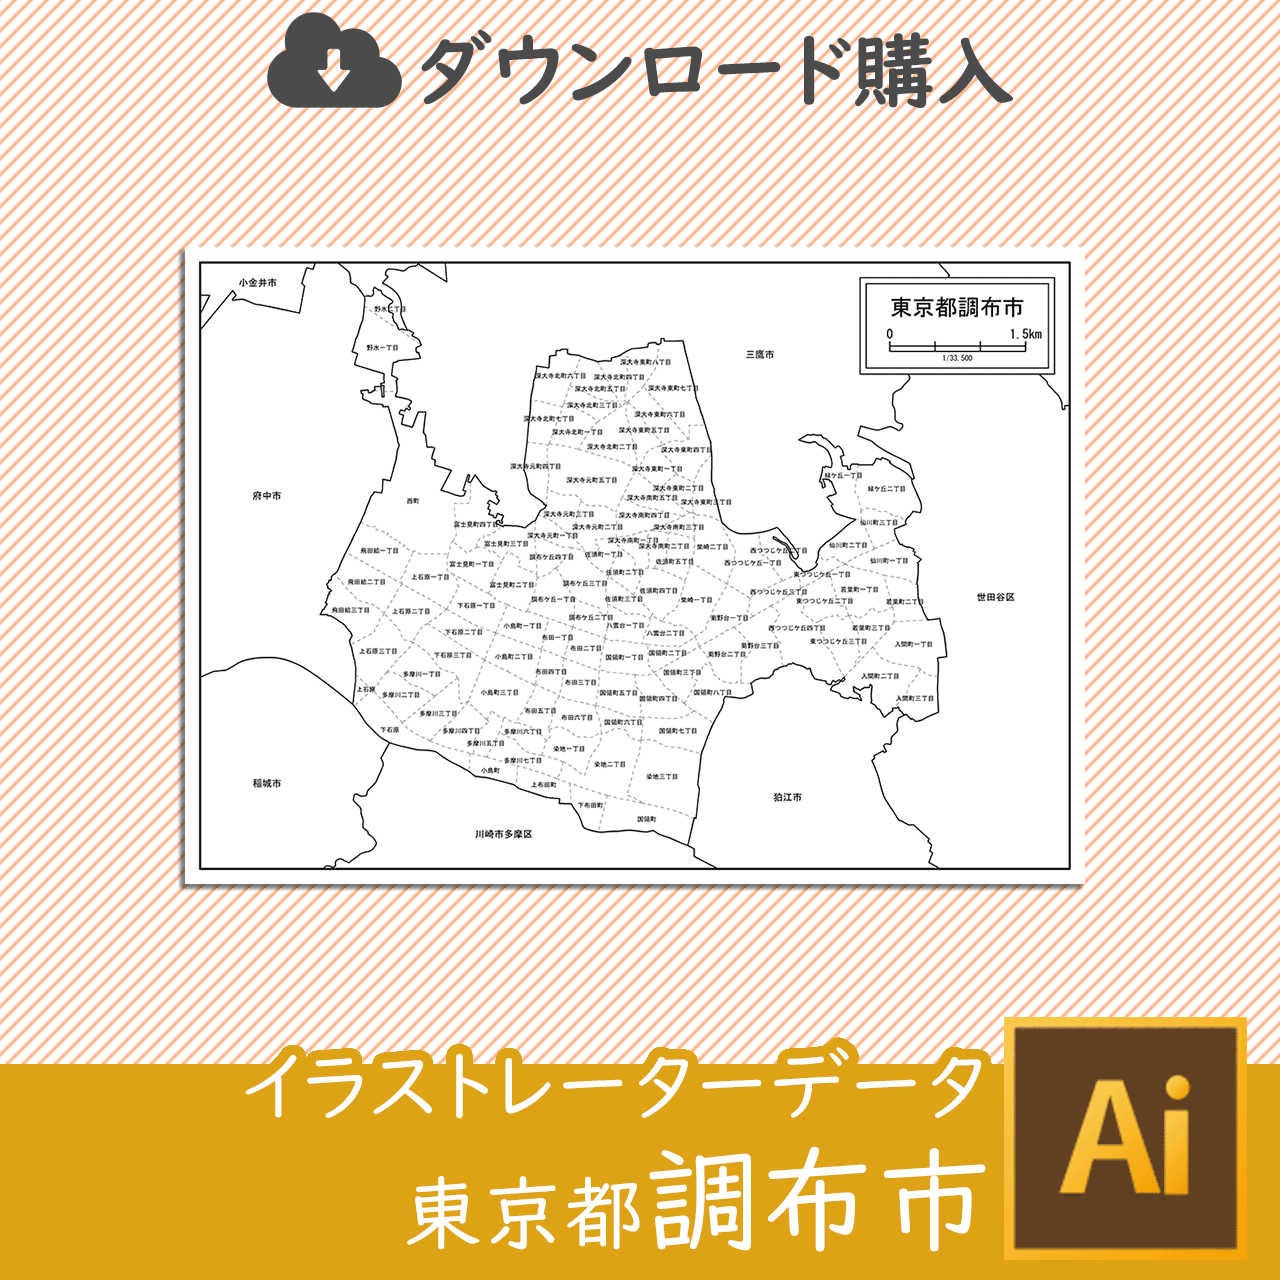 調布市の白地図のサムネイル画像